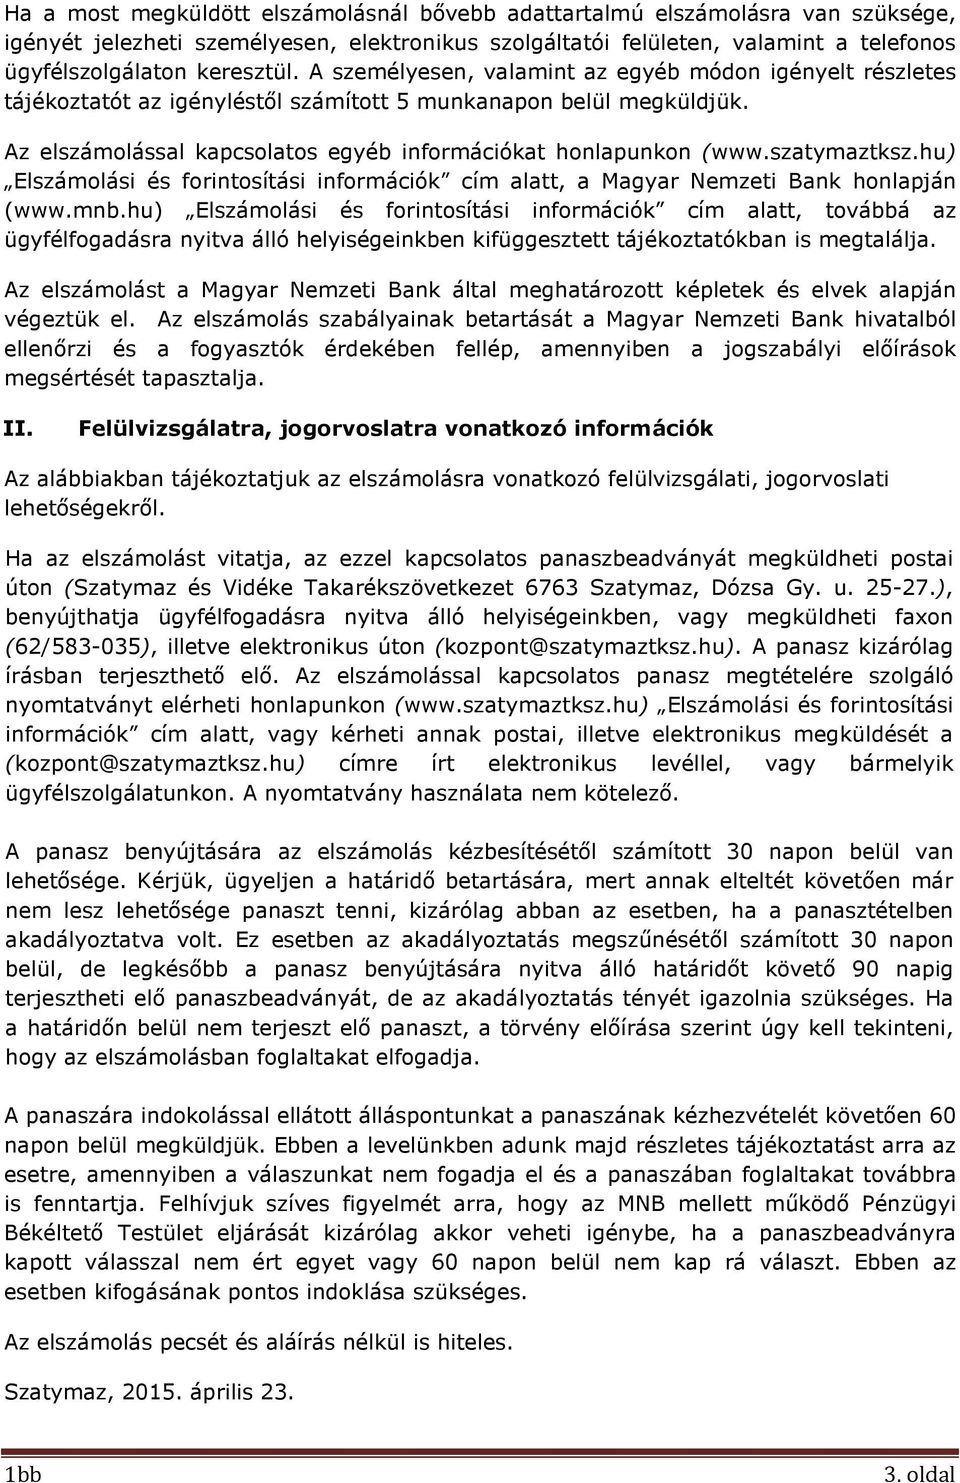 szatymaztksz.hu) Elszámolási és forintosítási információk cím alatt, a Magyar Nemzeti Bank honlapján (www.mnb.